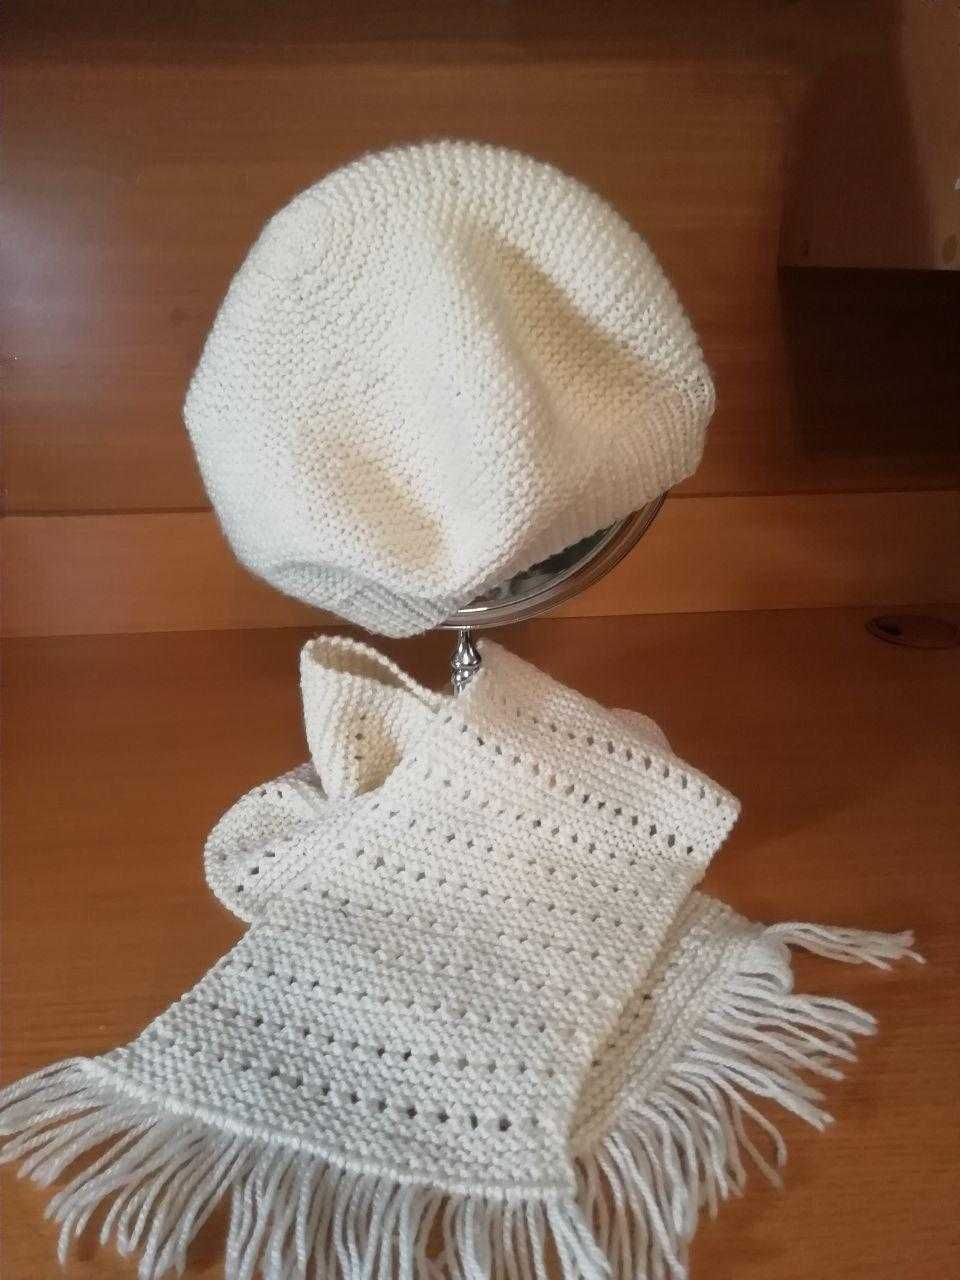 Вязаные шапки для новорожденных